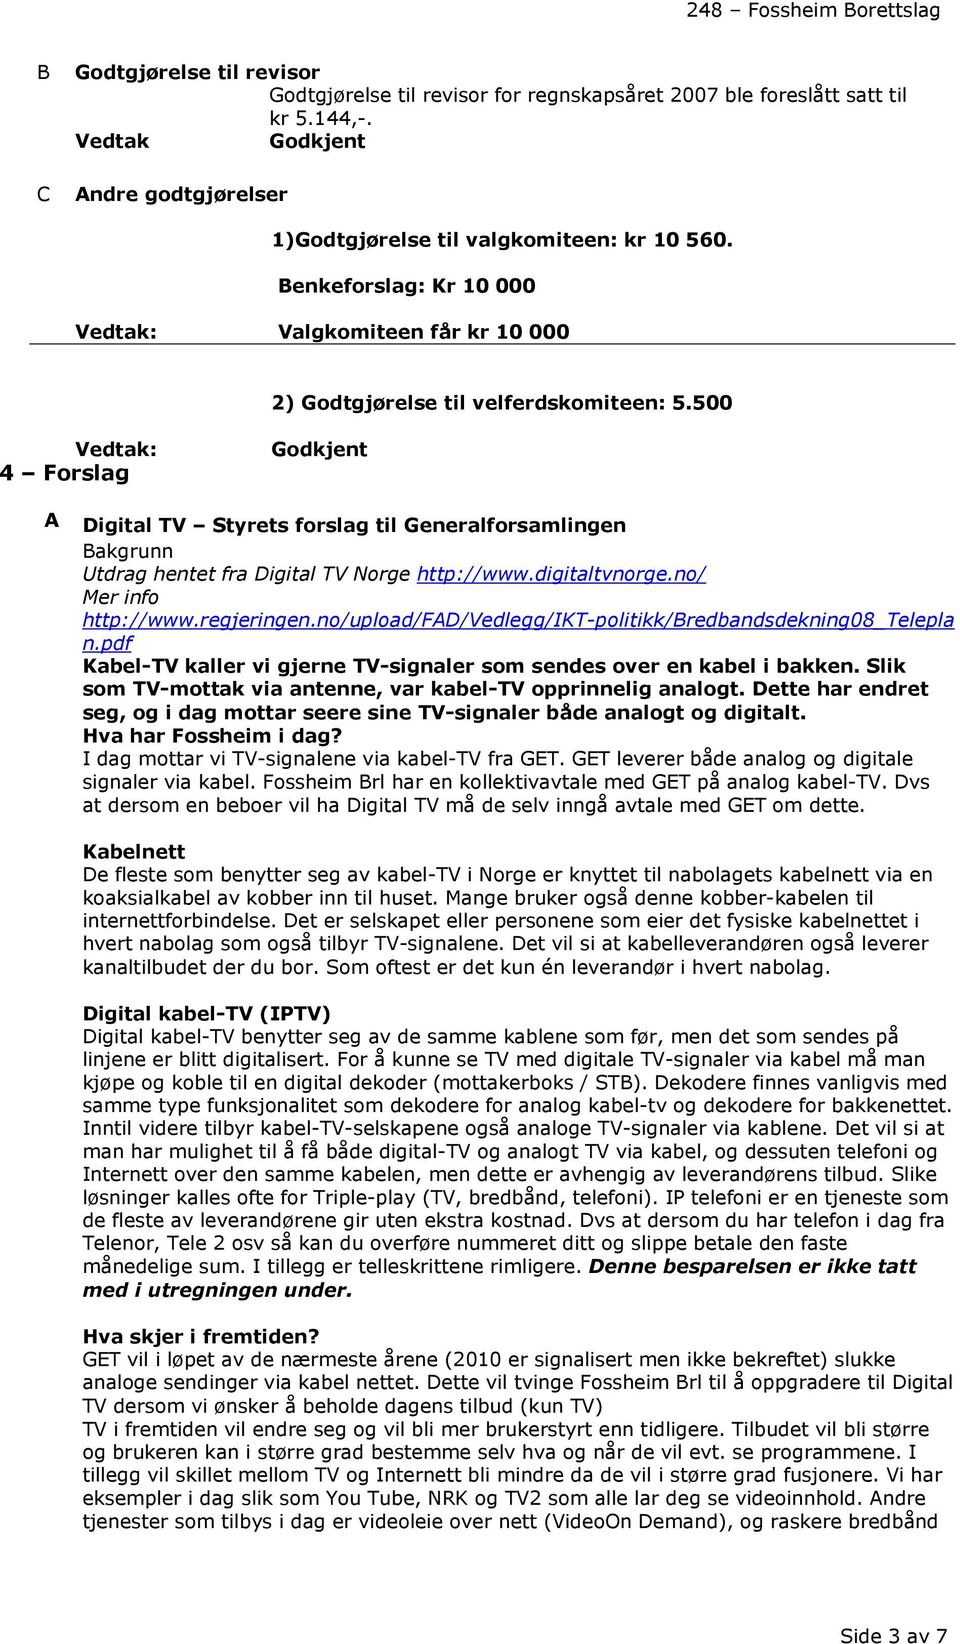 500 : 4 Forslag A Digital TV Styrets forslag til Generalforsamlingen Bakgrunn Utdrag hentet fra Digital TV Norge http://www.digitaltvnorge.no/ Mer info http://www.regjeringen.